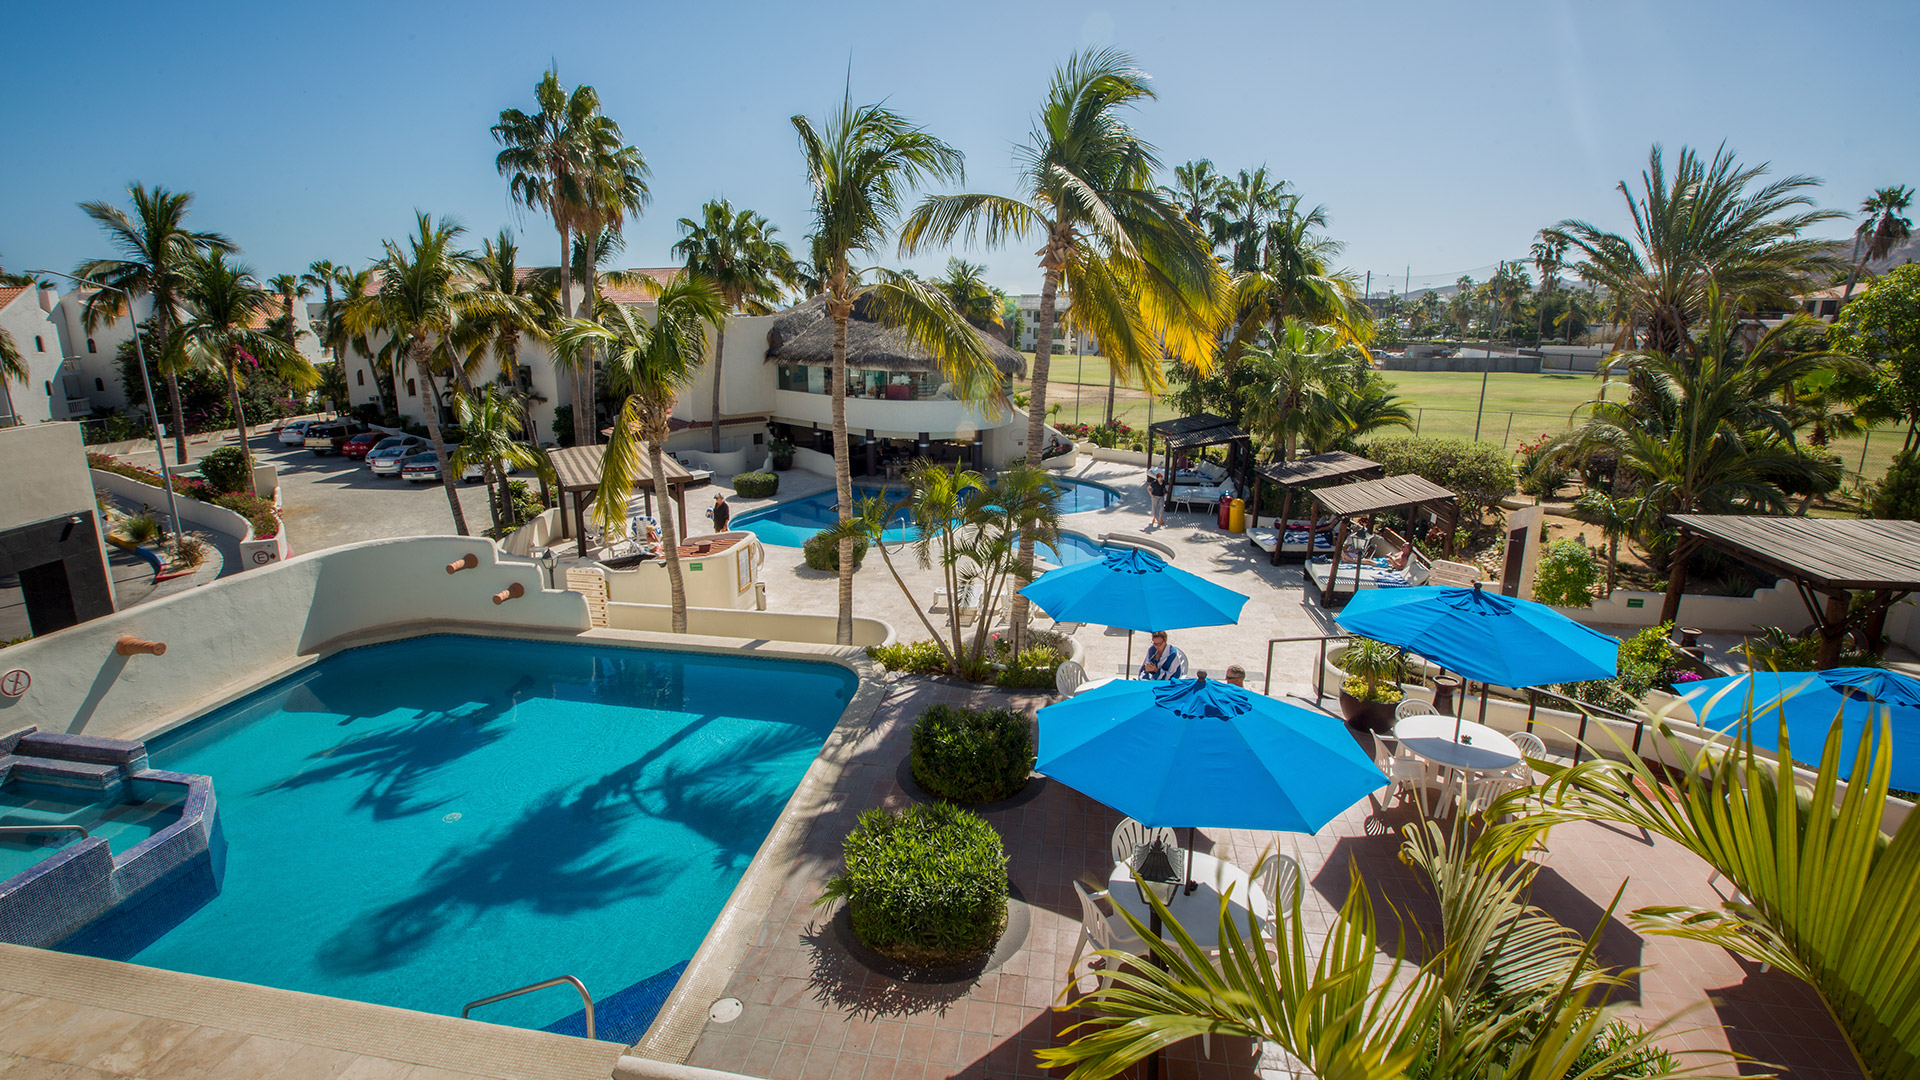 royal-holiday-hotel-resort-alberca-palmeras-hotel-park-royal-los-cabos-mexico-baja-california-sur-san-jose-del-cabo